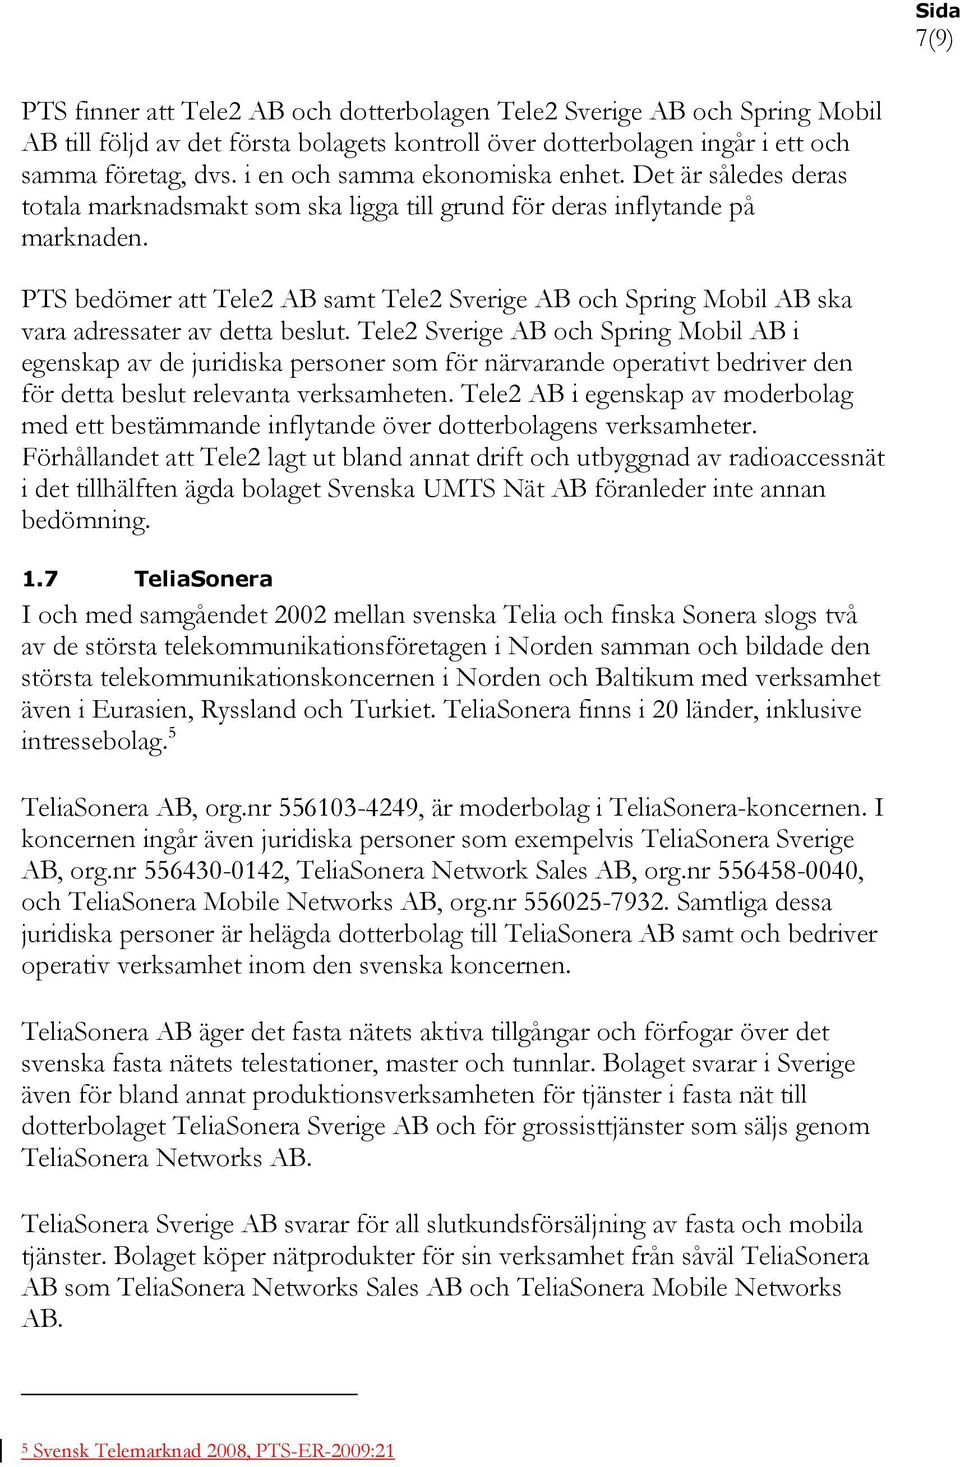 PTS bedömer att Tele2 AB samt Tele2 Sverige AB och Spring Mobil AB ska vara adressater av detta beslut.